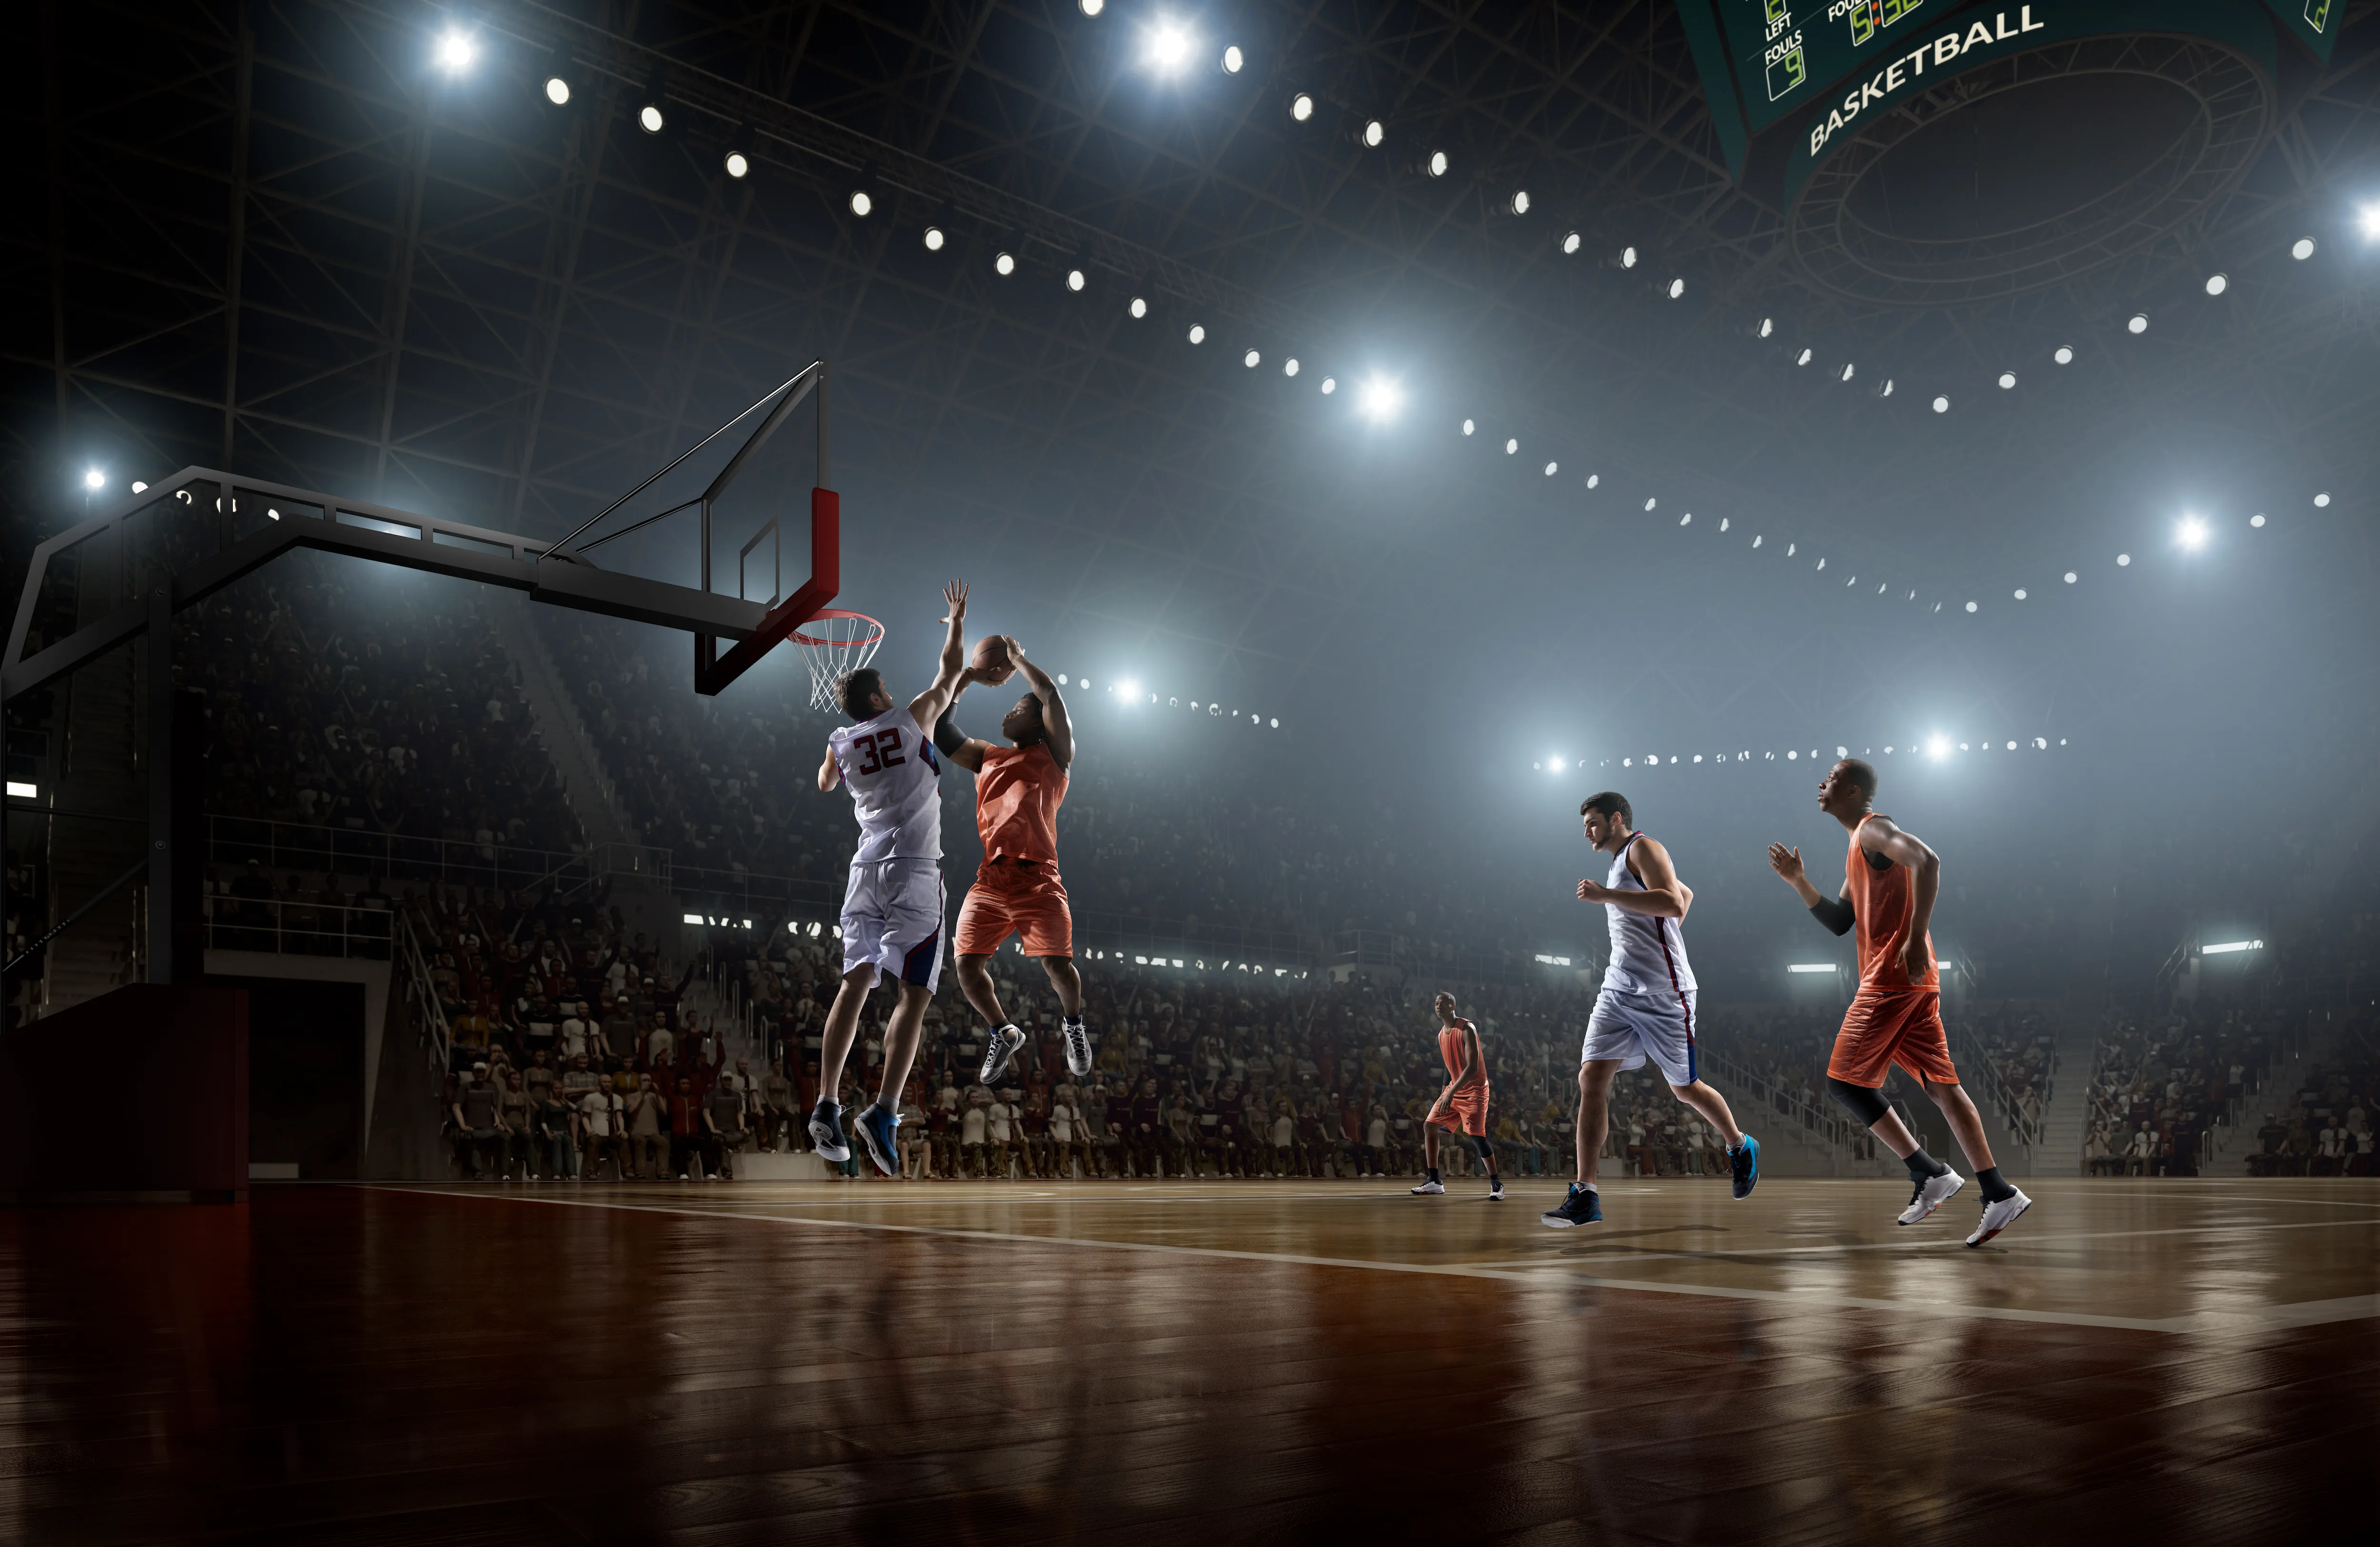 A basketball stock image.